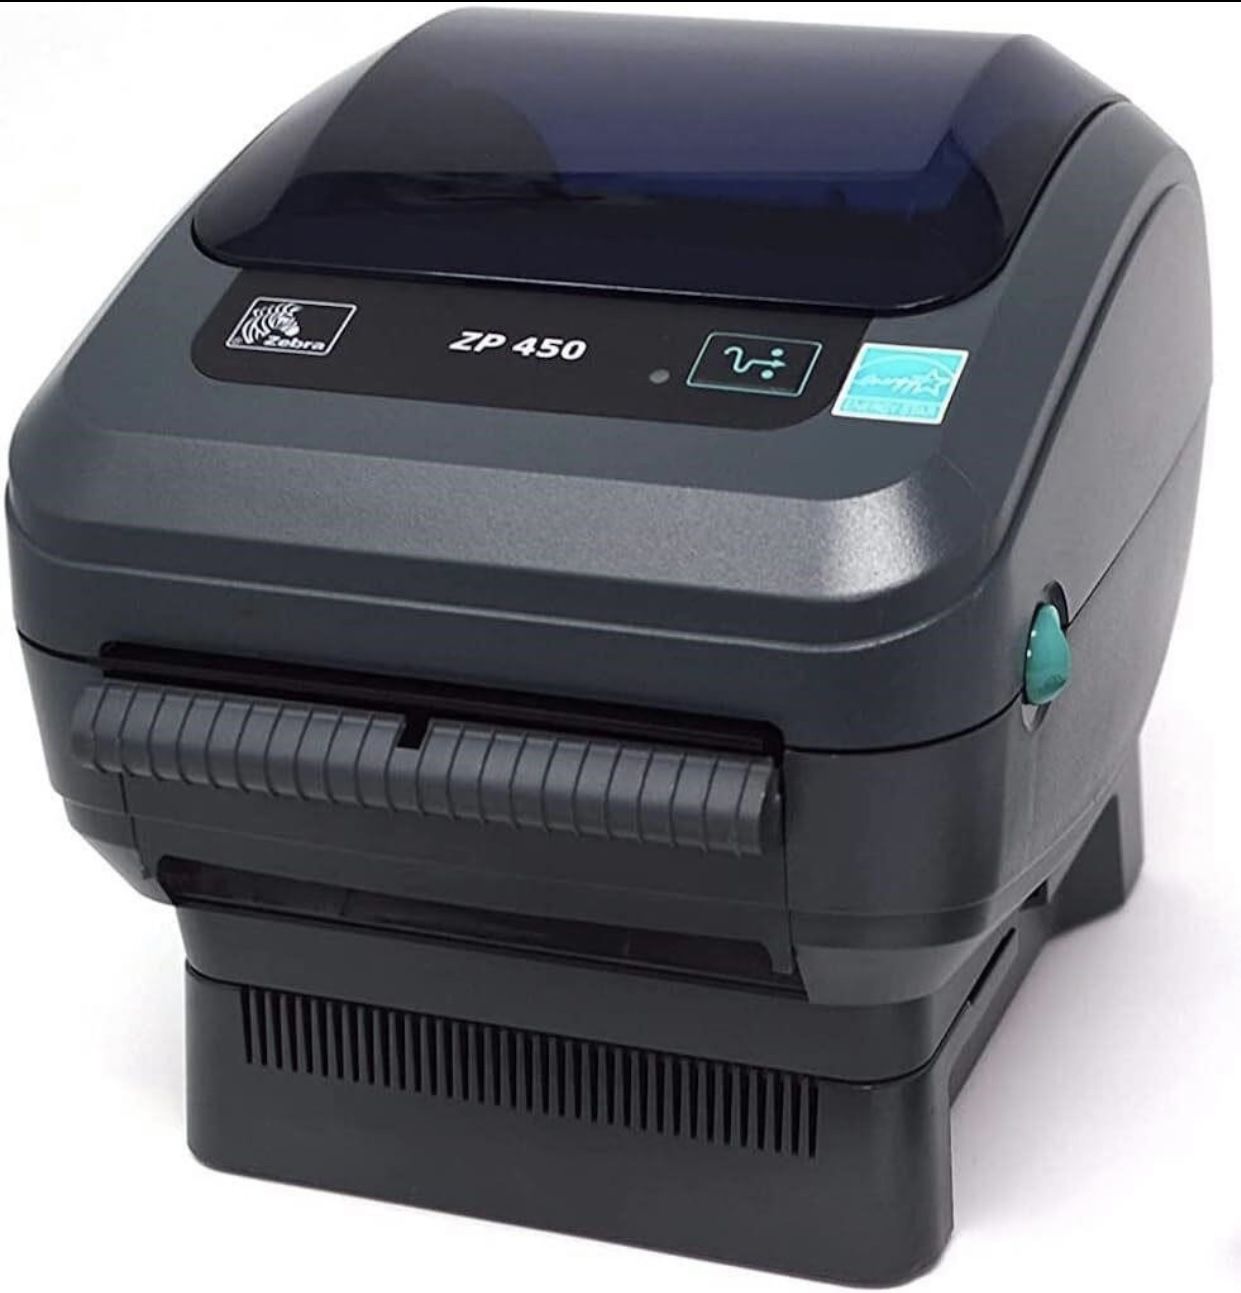 Zebra Zone 450 Label Printer